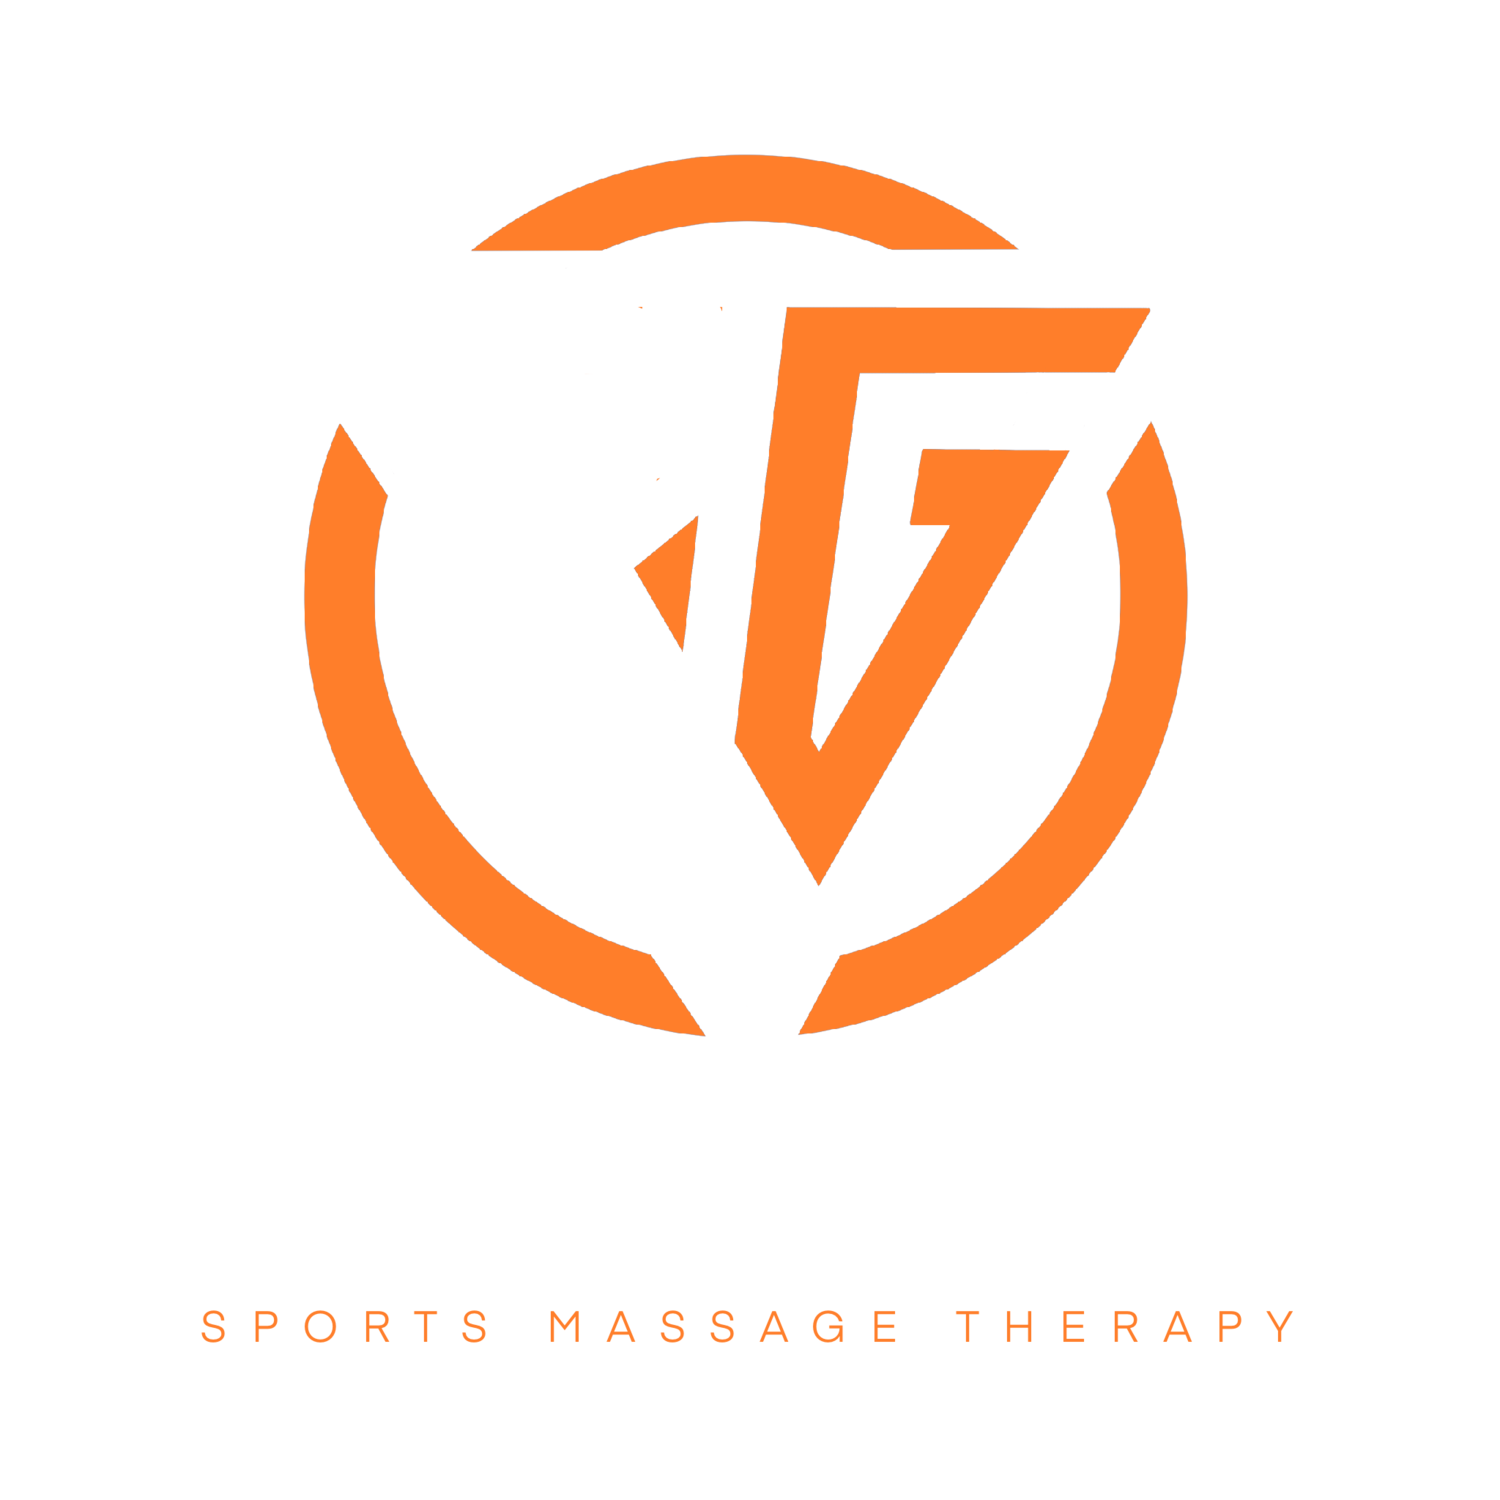 ZG Sports Massage Therapy